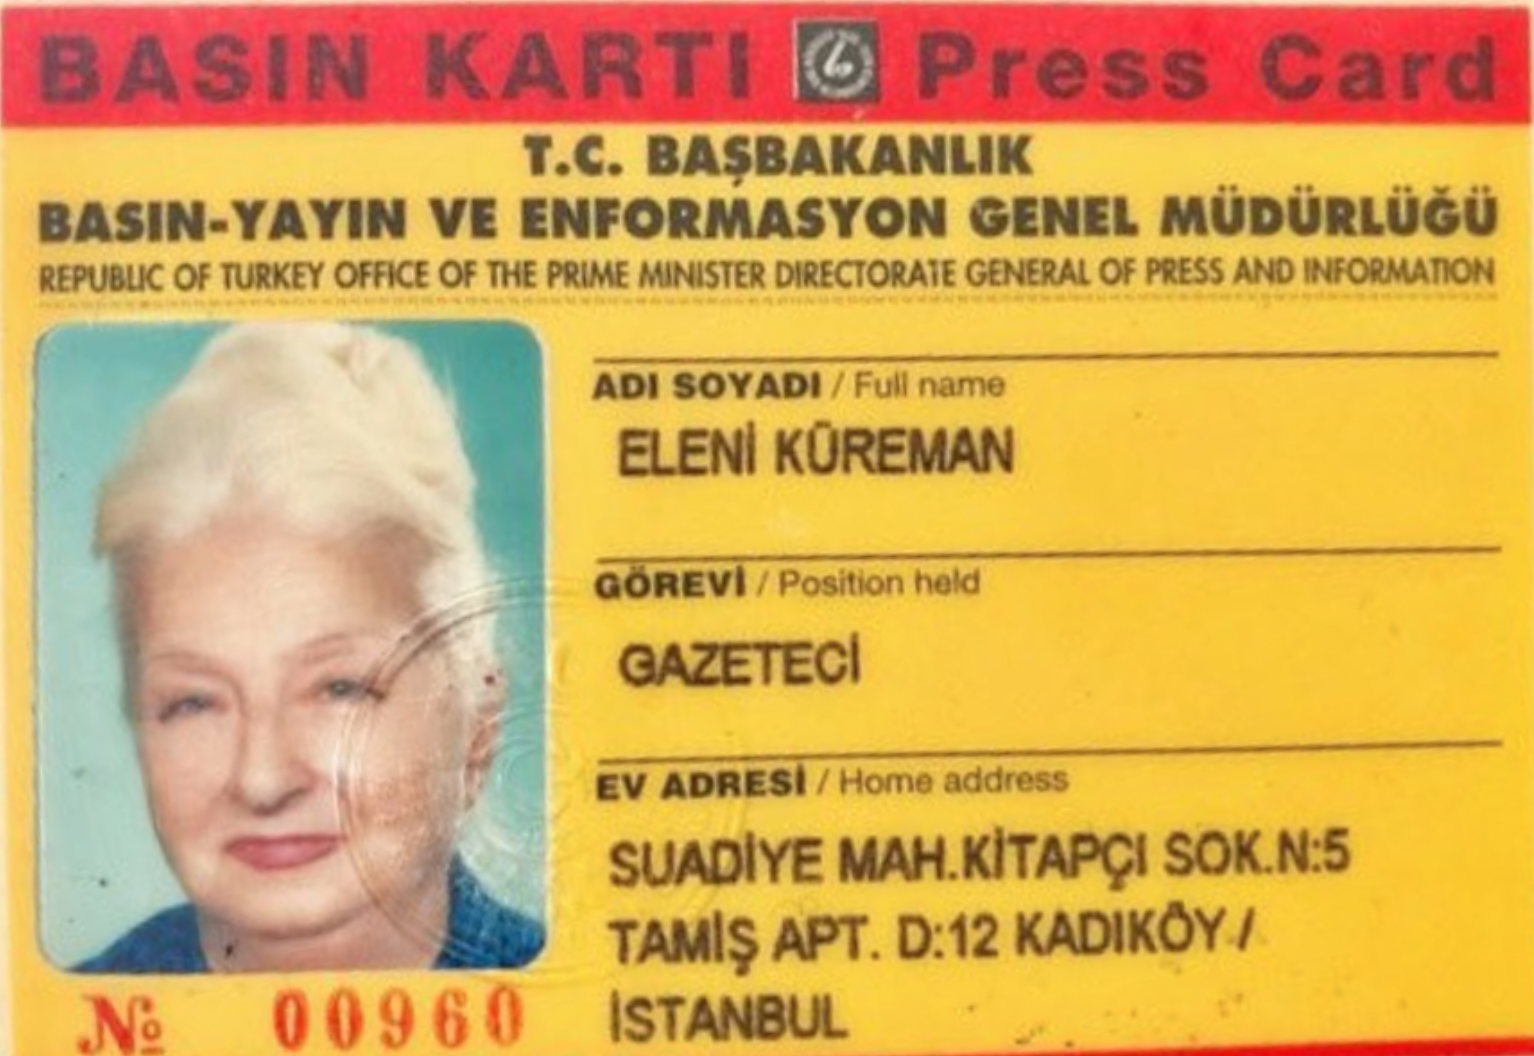 Küreman'ın basın kartı